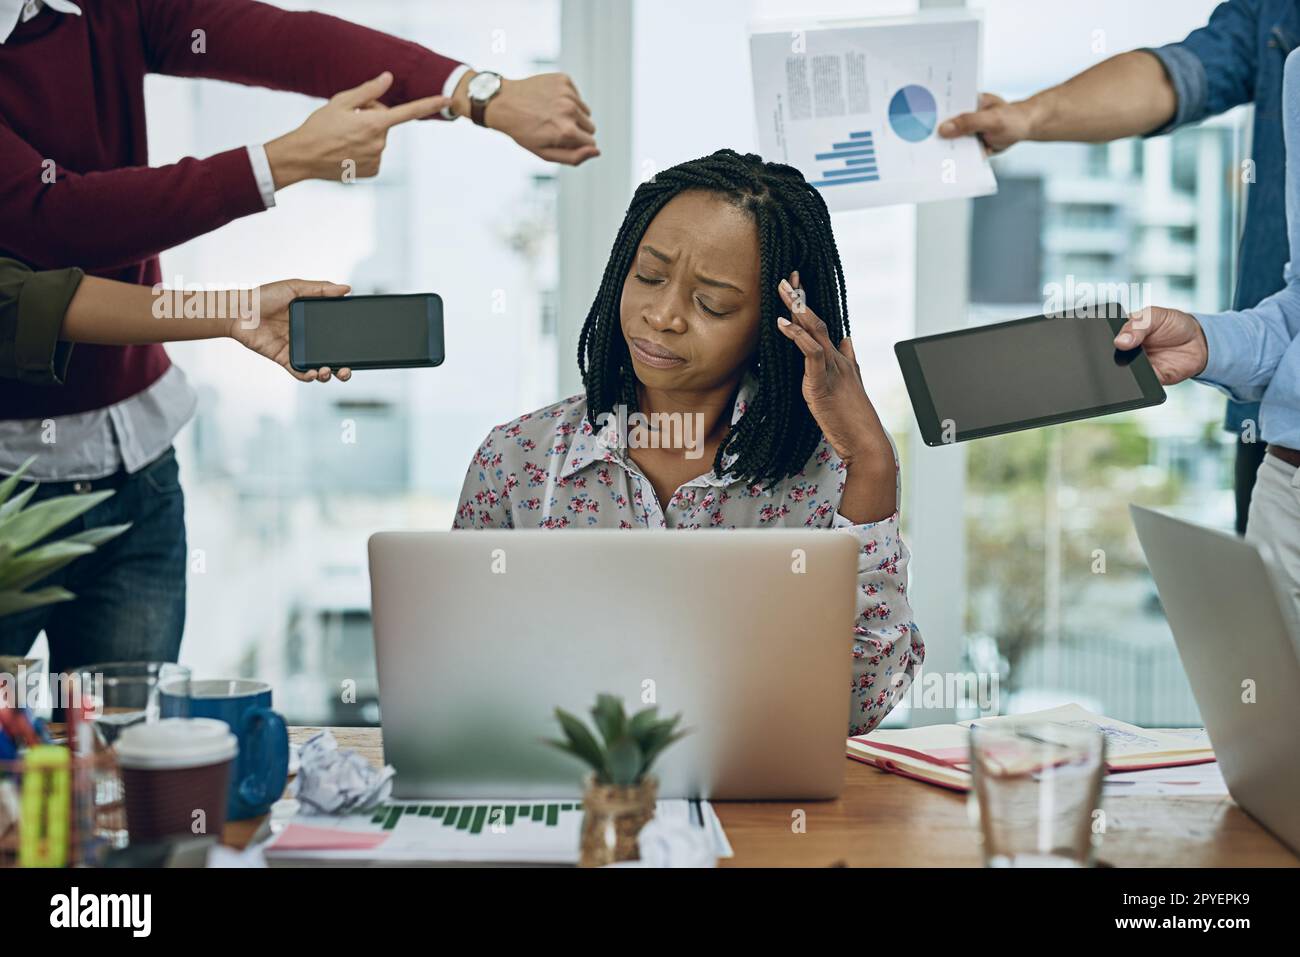 Ertrinken in den Anforderungen des Arbeitstages. Eine junge Geschäftsfrau, die in einer anspruchsvollen Büroumgebung gestresst aussieht. Stockfoto